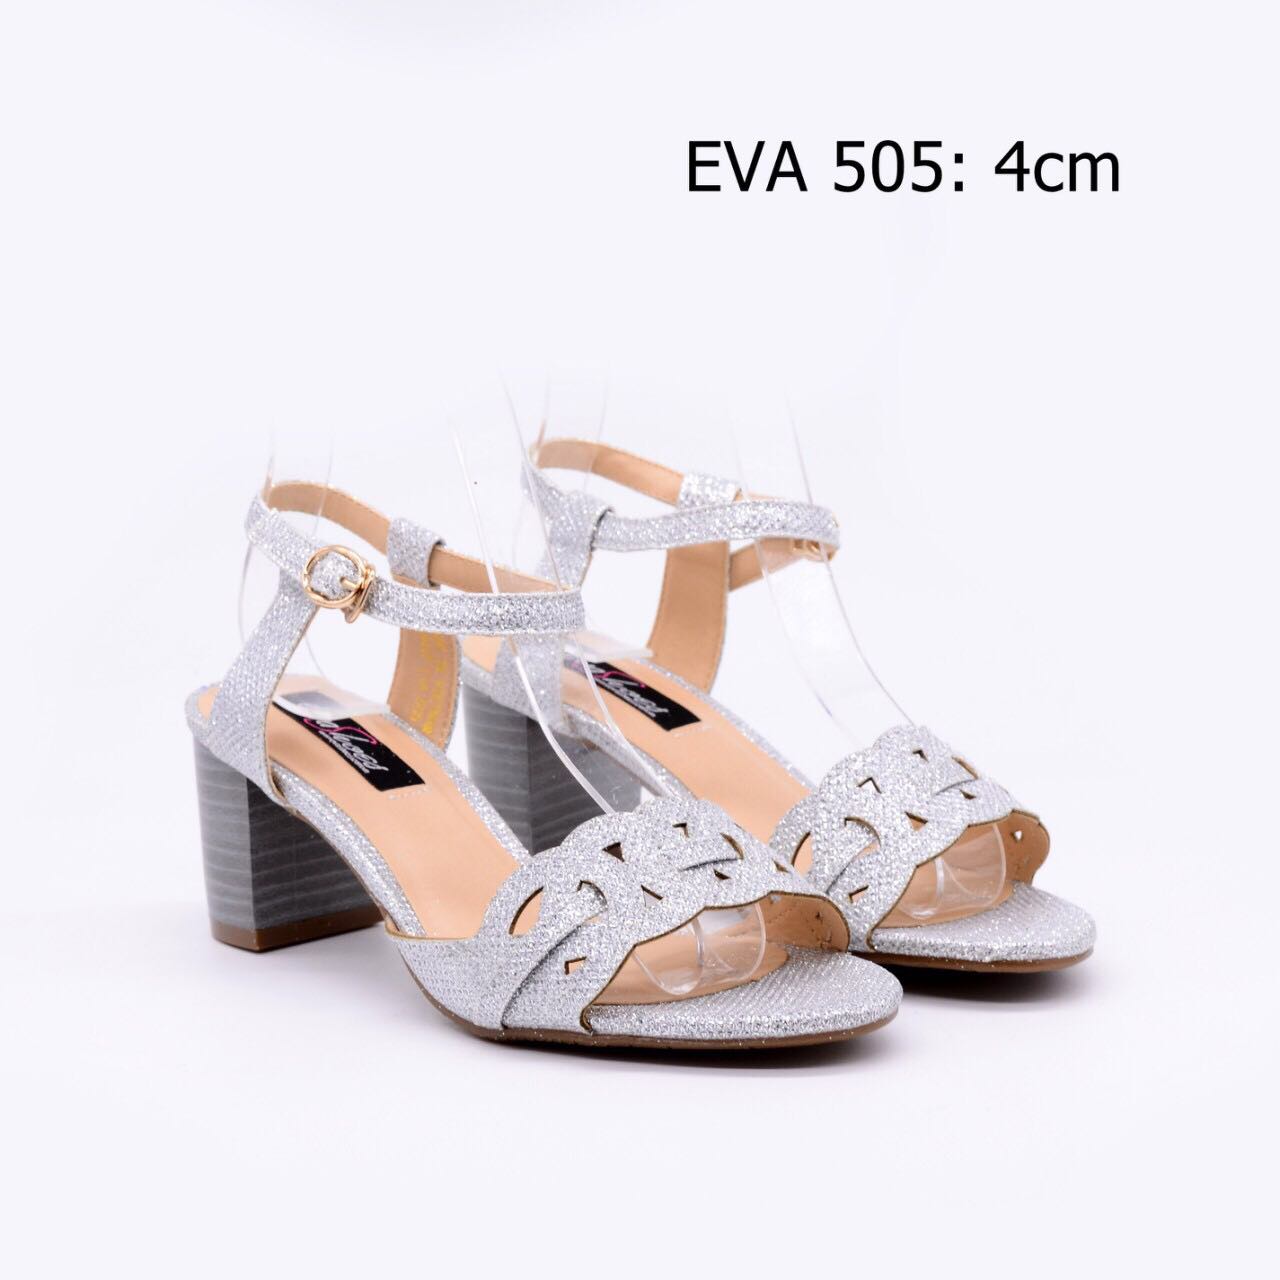 Giày xăng đan ánh kim quyến rũ EVA505 cao 4cm.